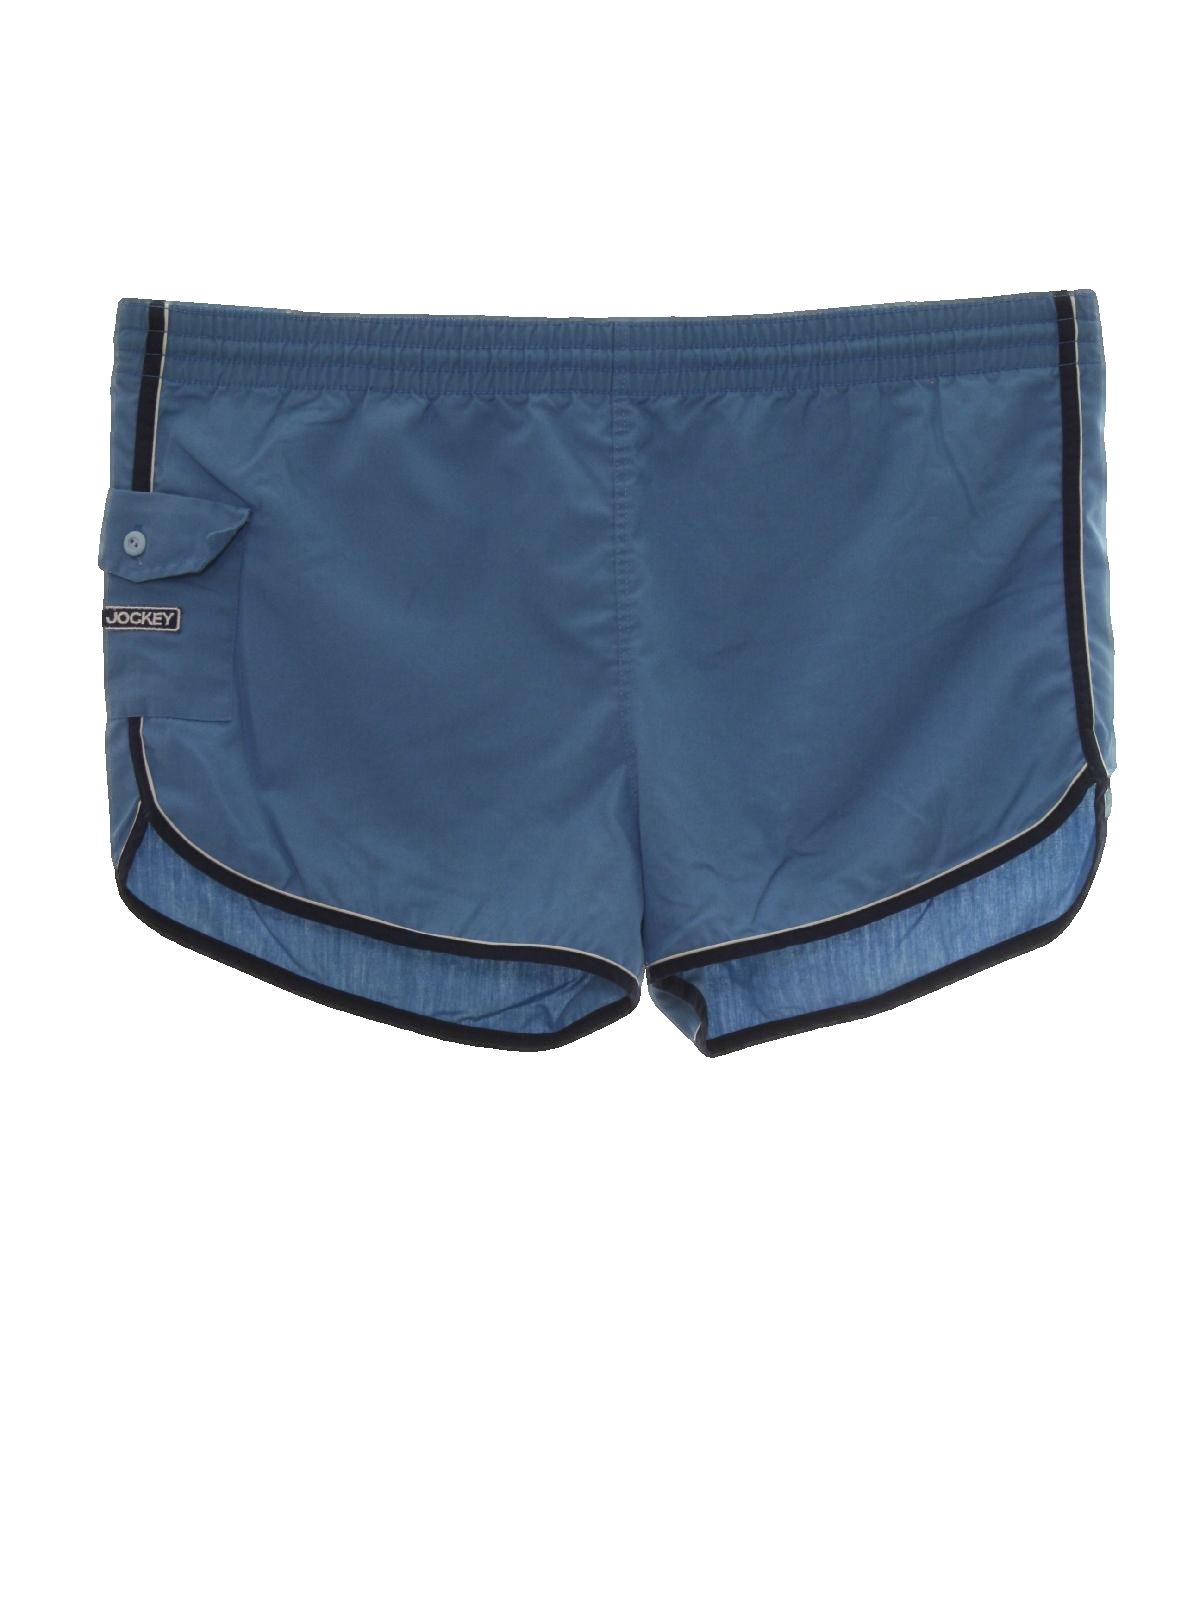 80's Vintage Swimsuit/Swimwear: 80s -Jockey- Mens powder blue ...